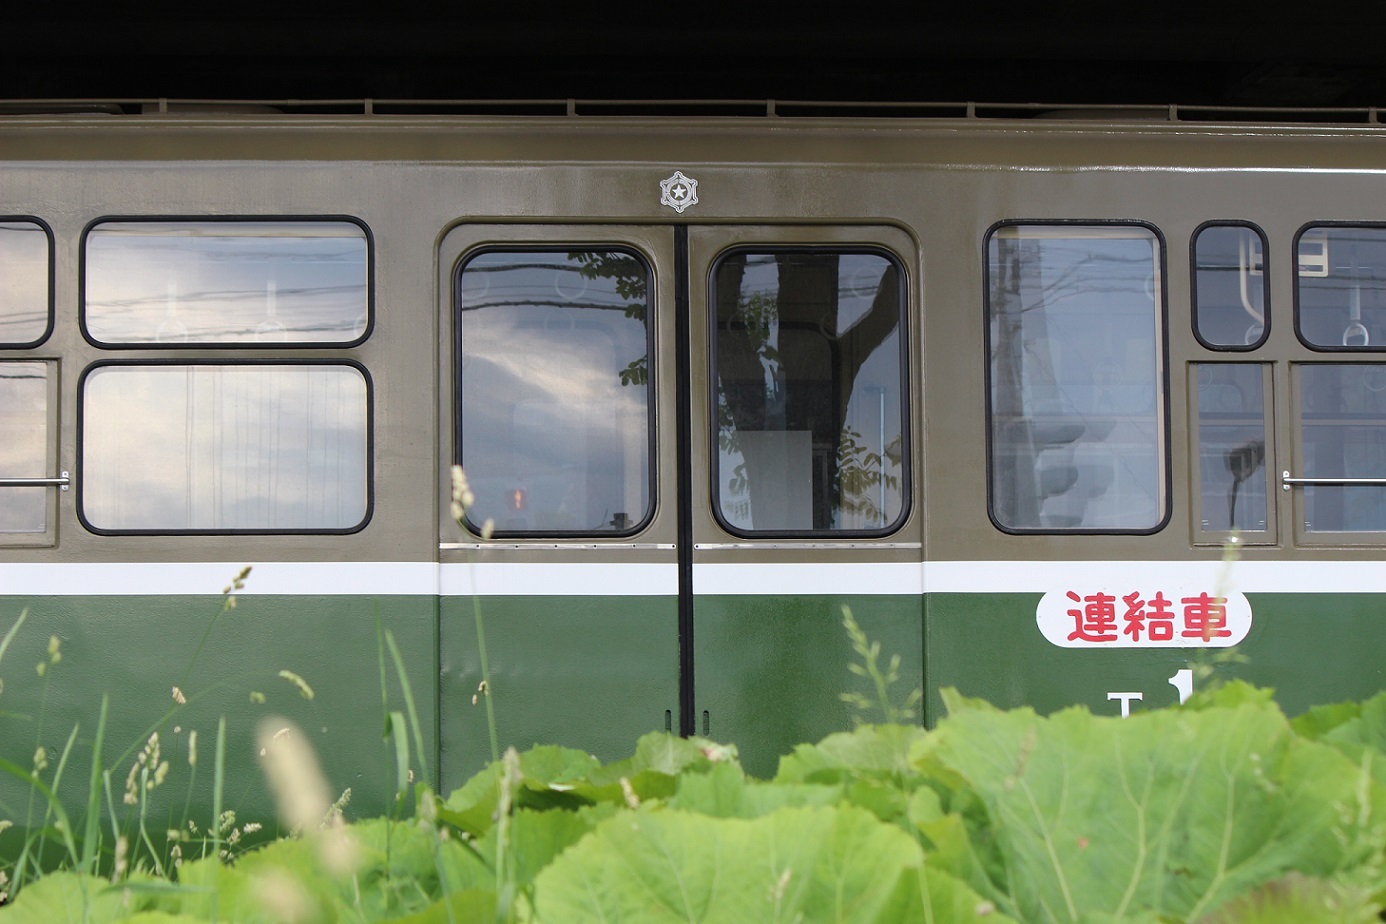 札幌市電親子電車Tc1号車aa03